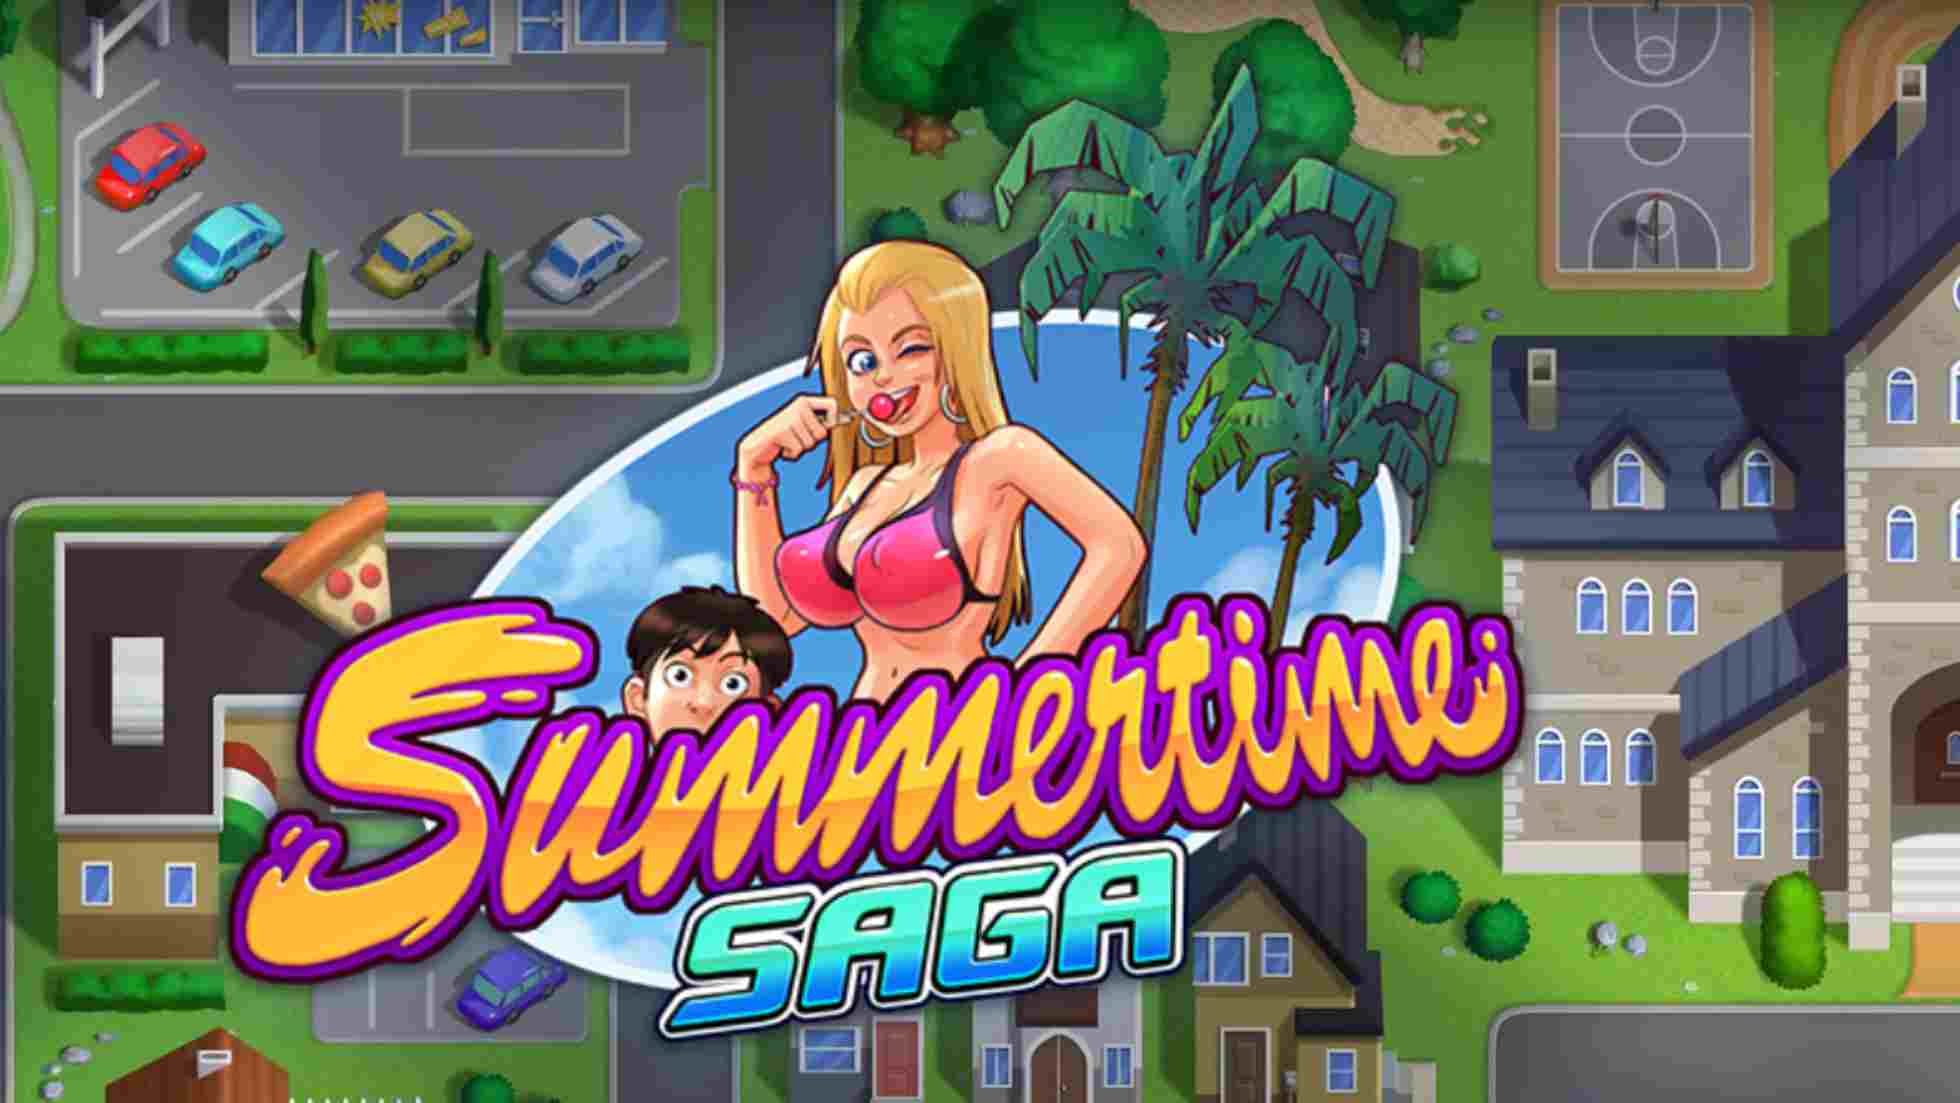 summertime saga